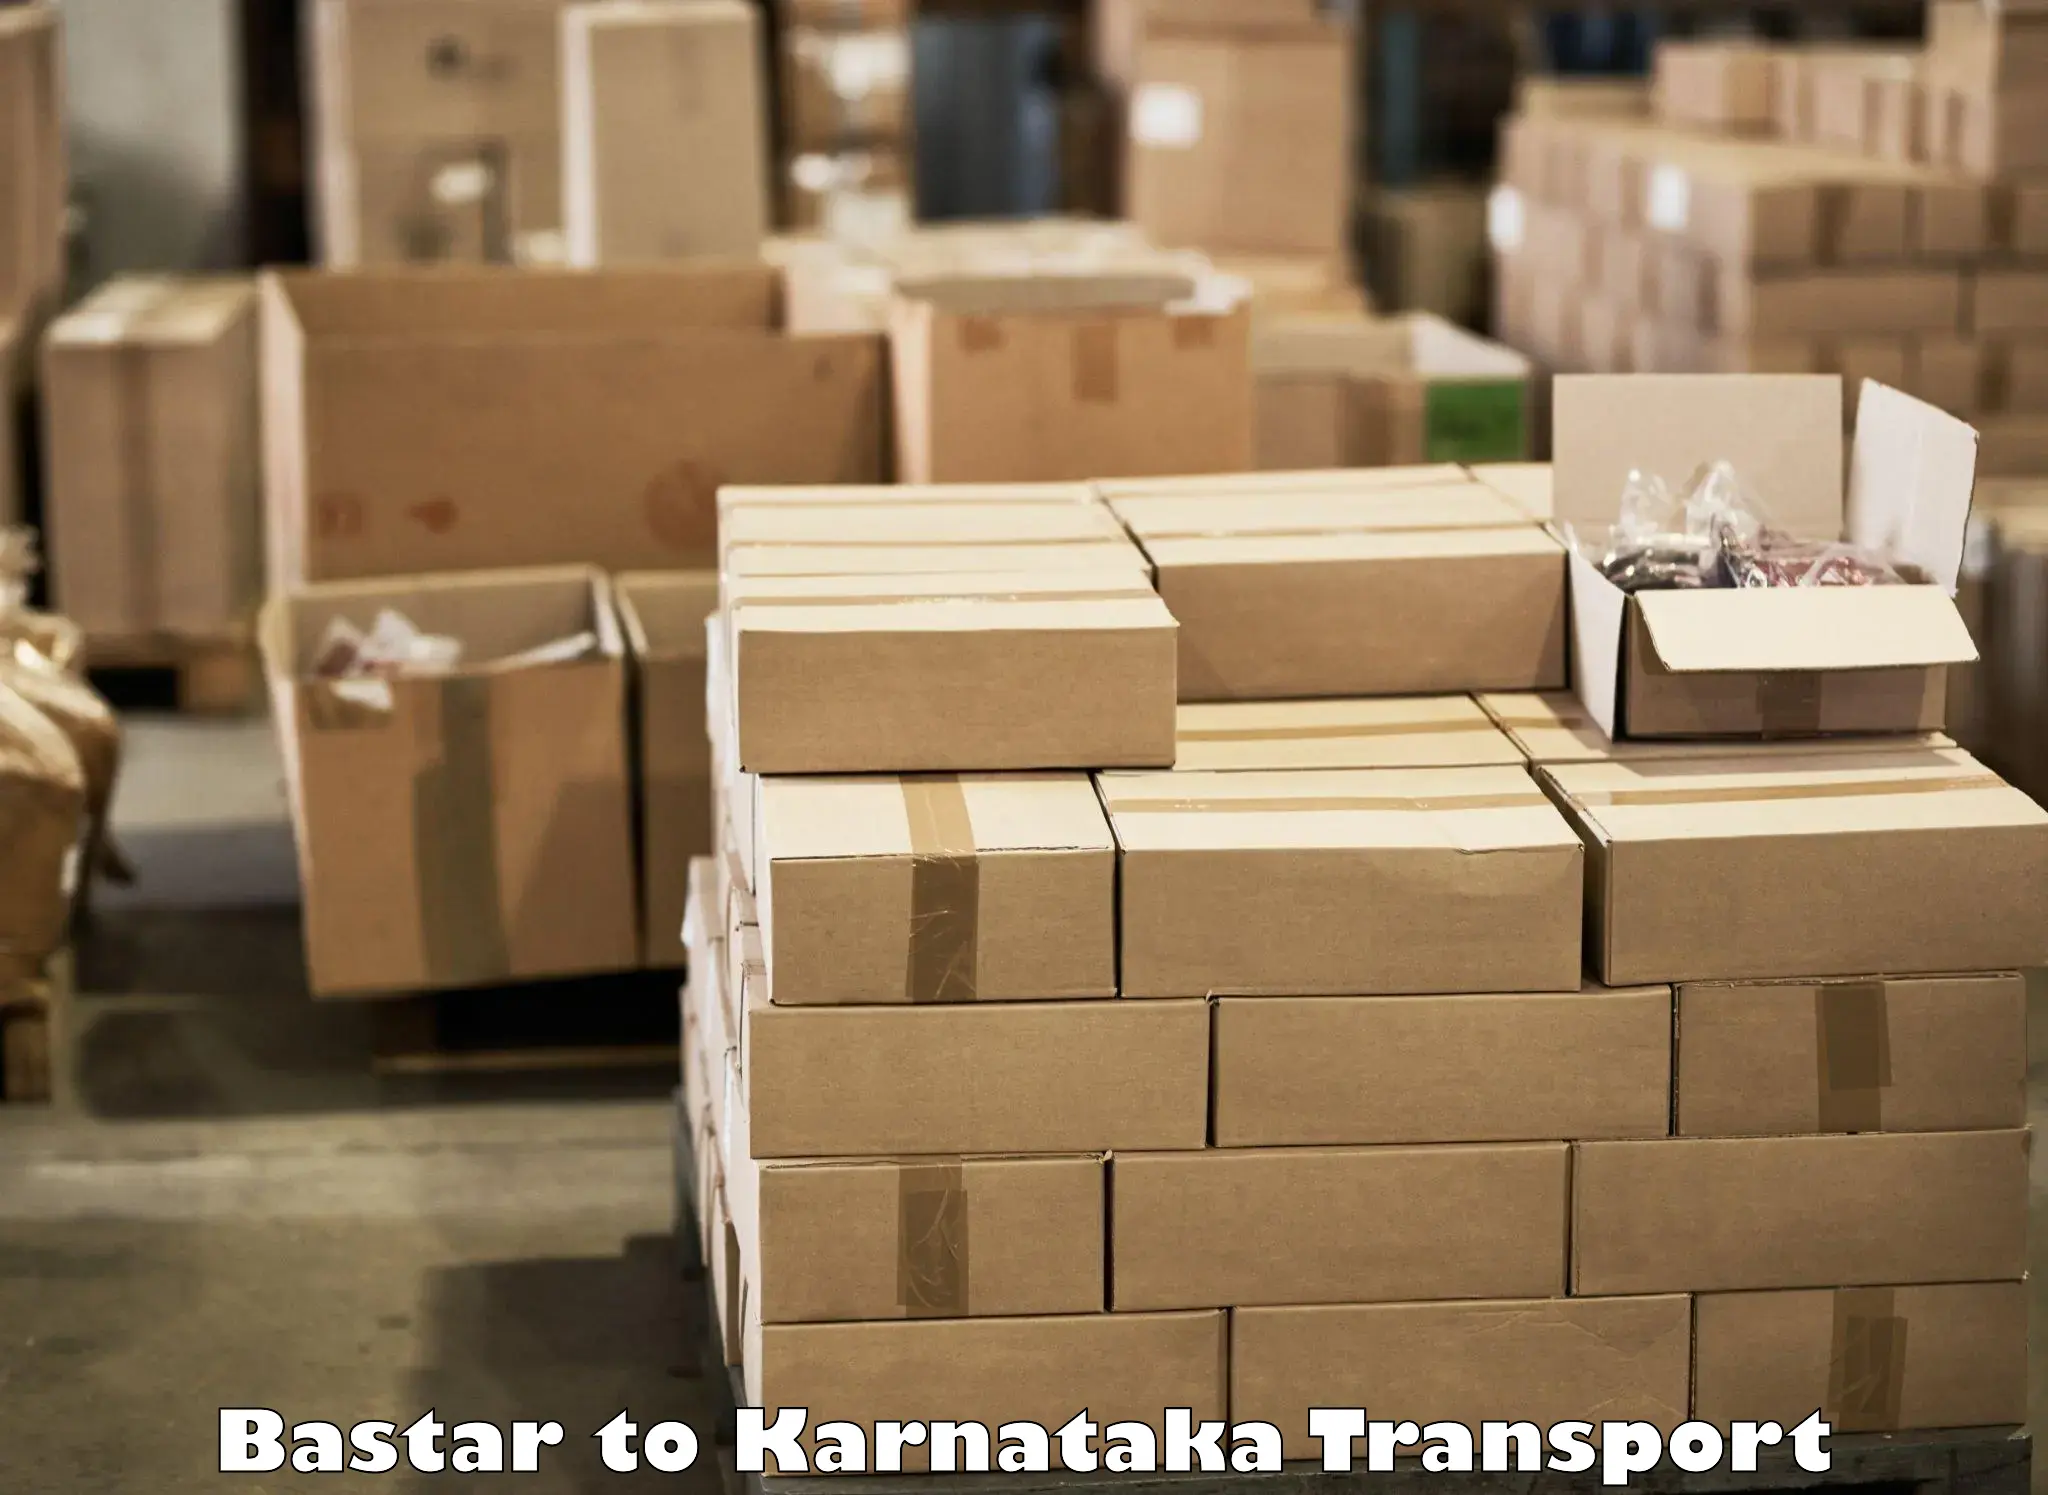 Commercial transport service Bastar to Jayanagar